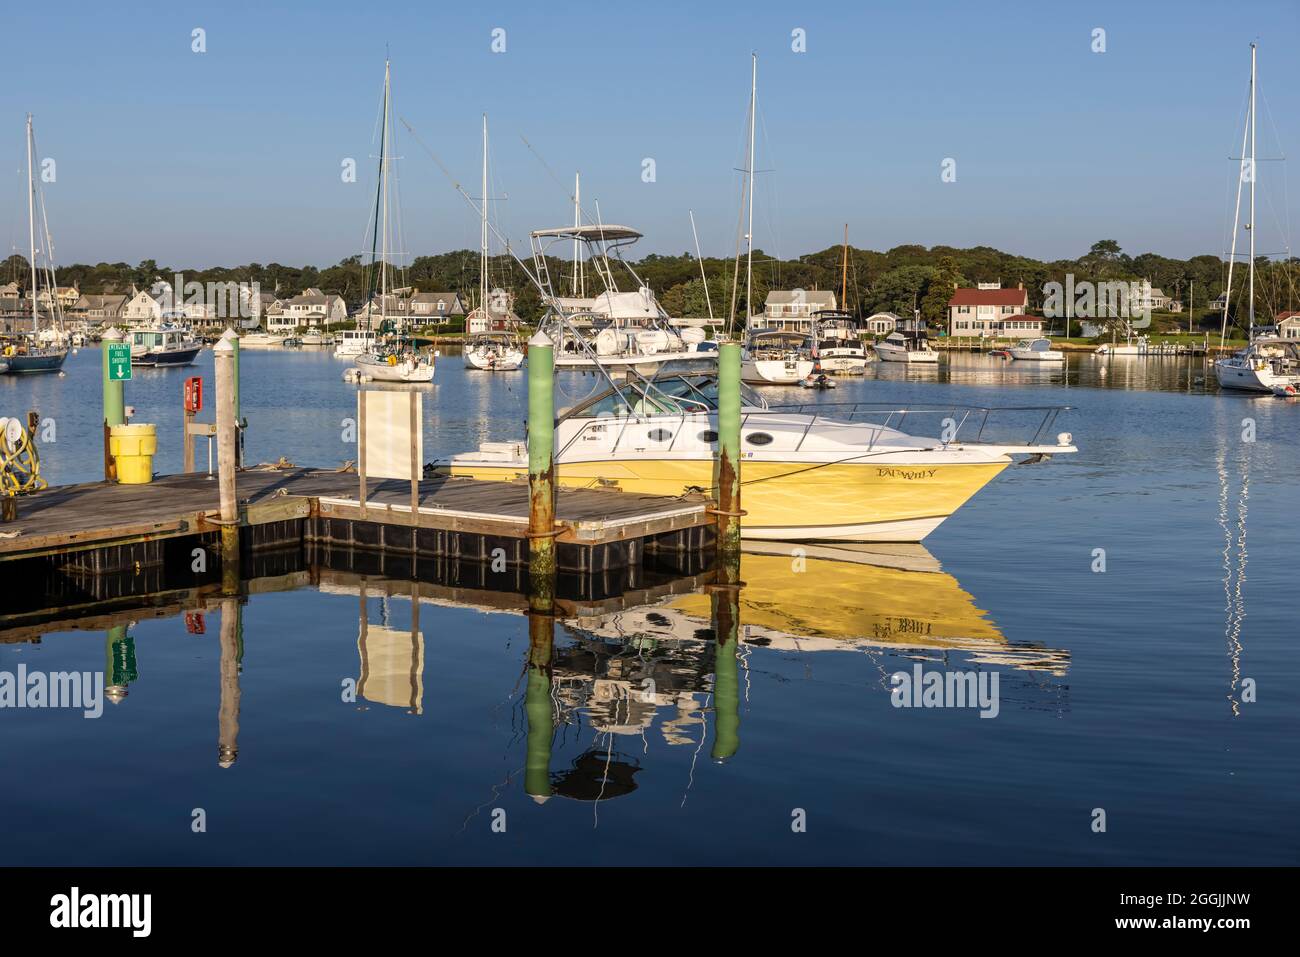 A fishing charter boat docked in Oak Bluffs harbor in Oak Bluffs, Massachusetts on Martha's Vineyard. Stock Photo